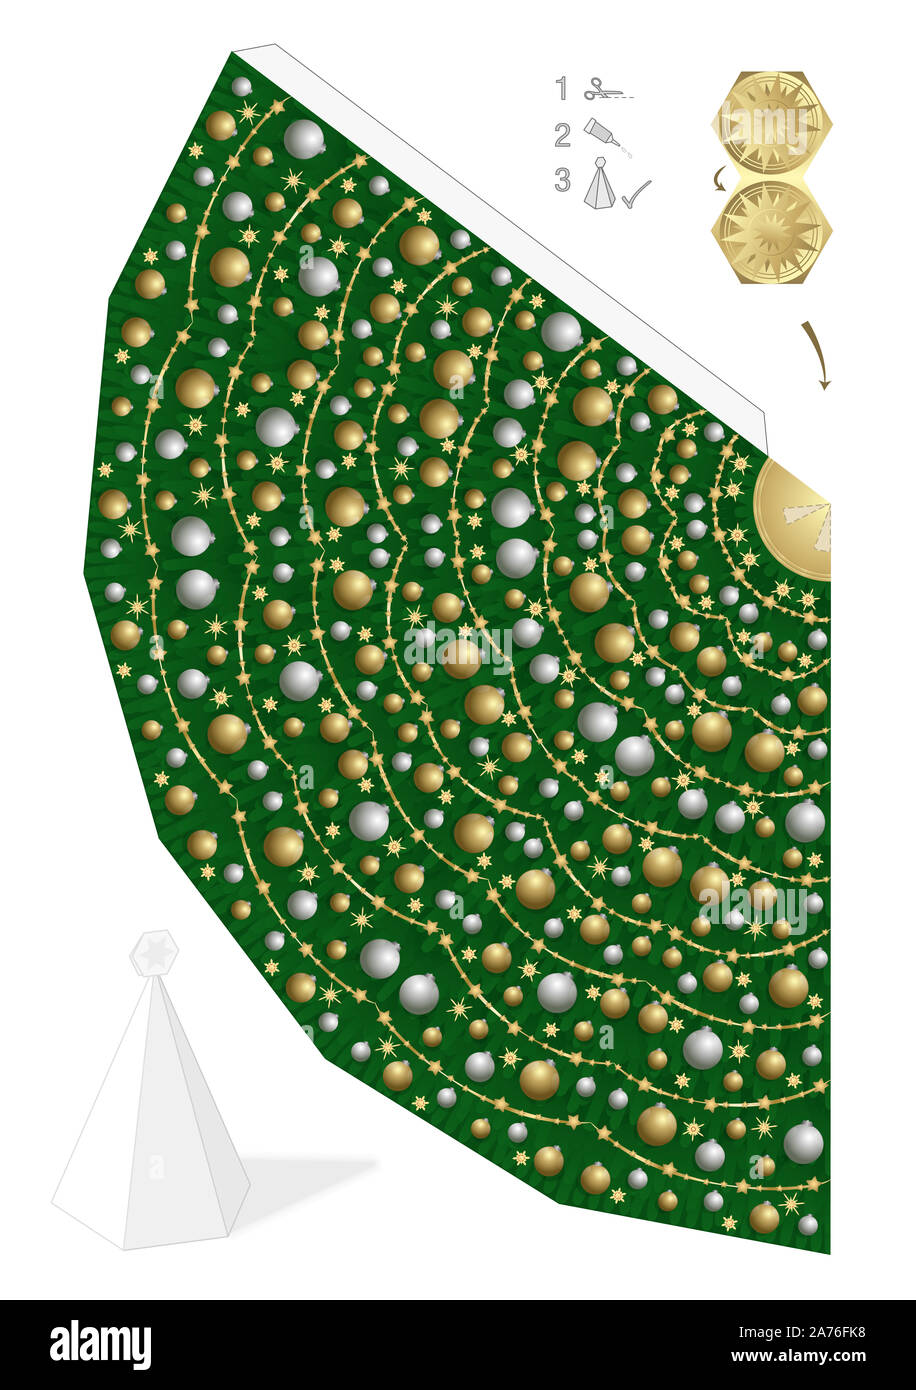 Weihnachtsbaum Vorlage. Easy 3D-Modell heraus zu schneiden, falten und kleben. Kreativen Spaß. Geschmückten Baum mit goldenen und silbernen Weihnachtskugeln. Stockfoto